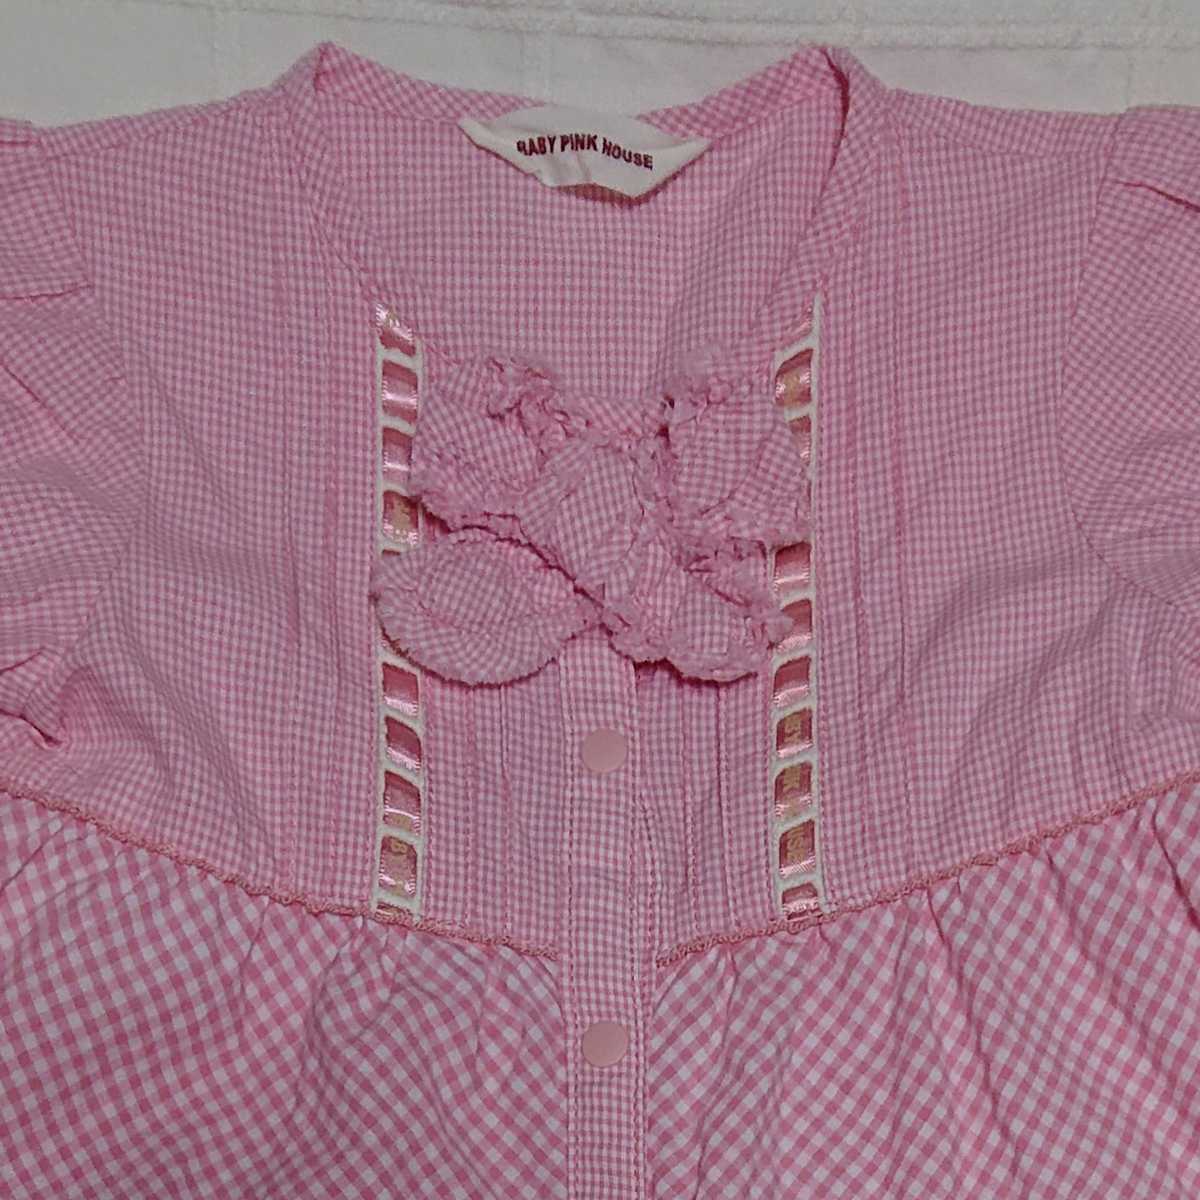 681 Baby Pink House ギンガムとはしごリボンのワンピース 80 ワンピース ミニ 売買されたオークション情報 Yahooの商品情報をアーカイブ公開 オークファン Aucfan Com